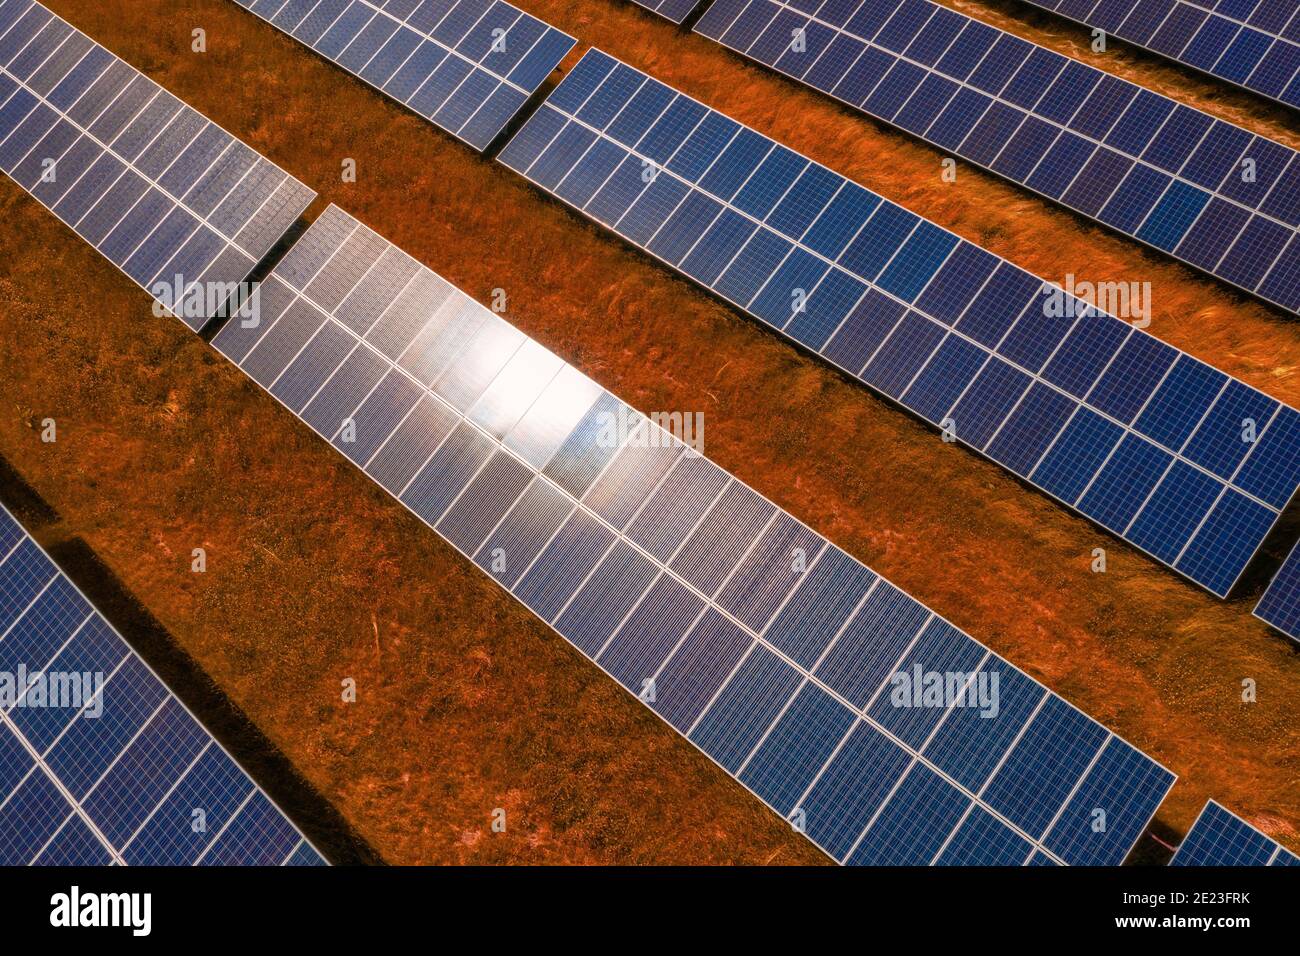 Lapeer, Michigan, rappresenta in modo creativo l'array di pannelli solari e mette in evidenza gli investimenti in energia sostenibile e rinnovabile Foto Stock